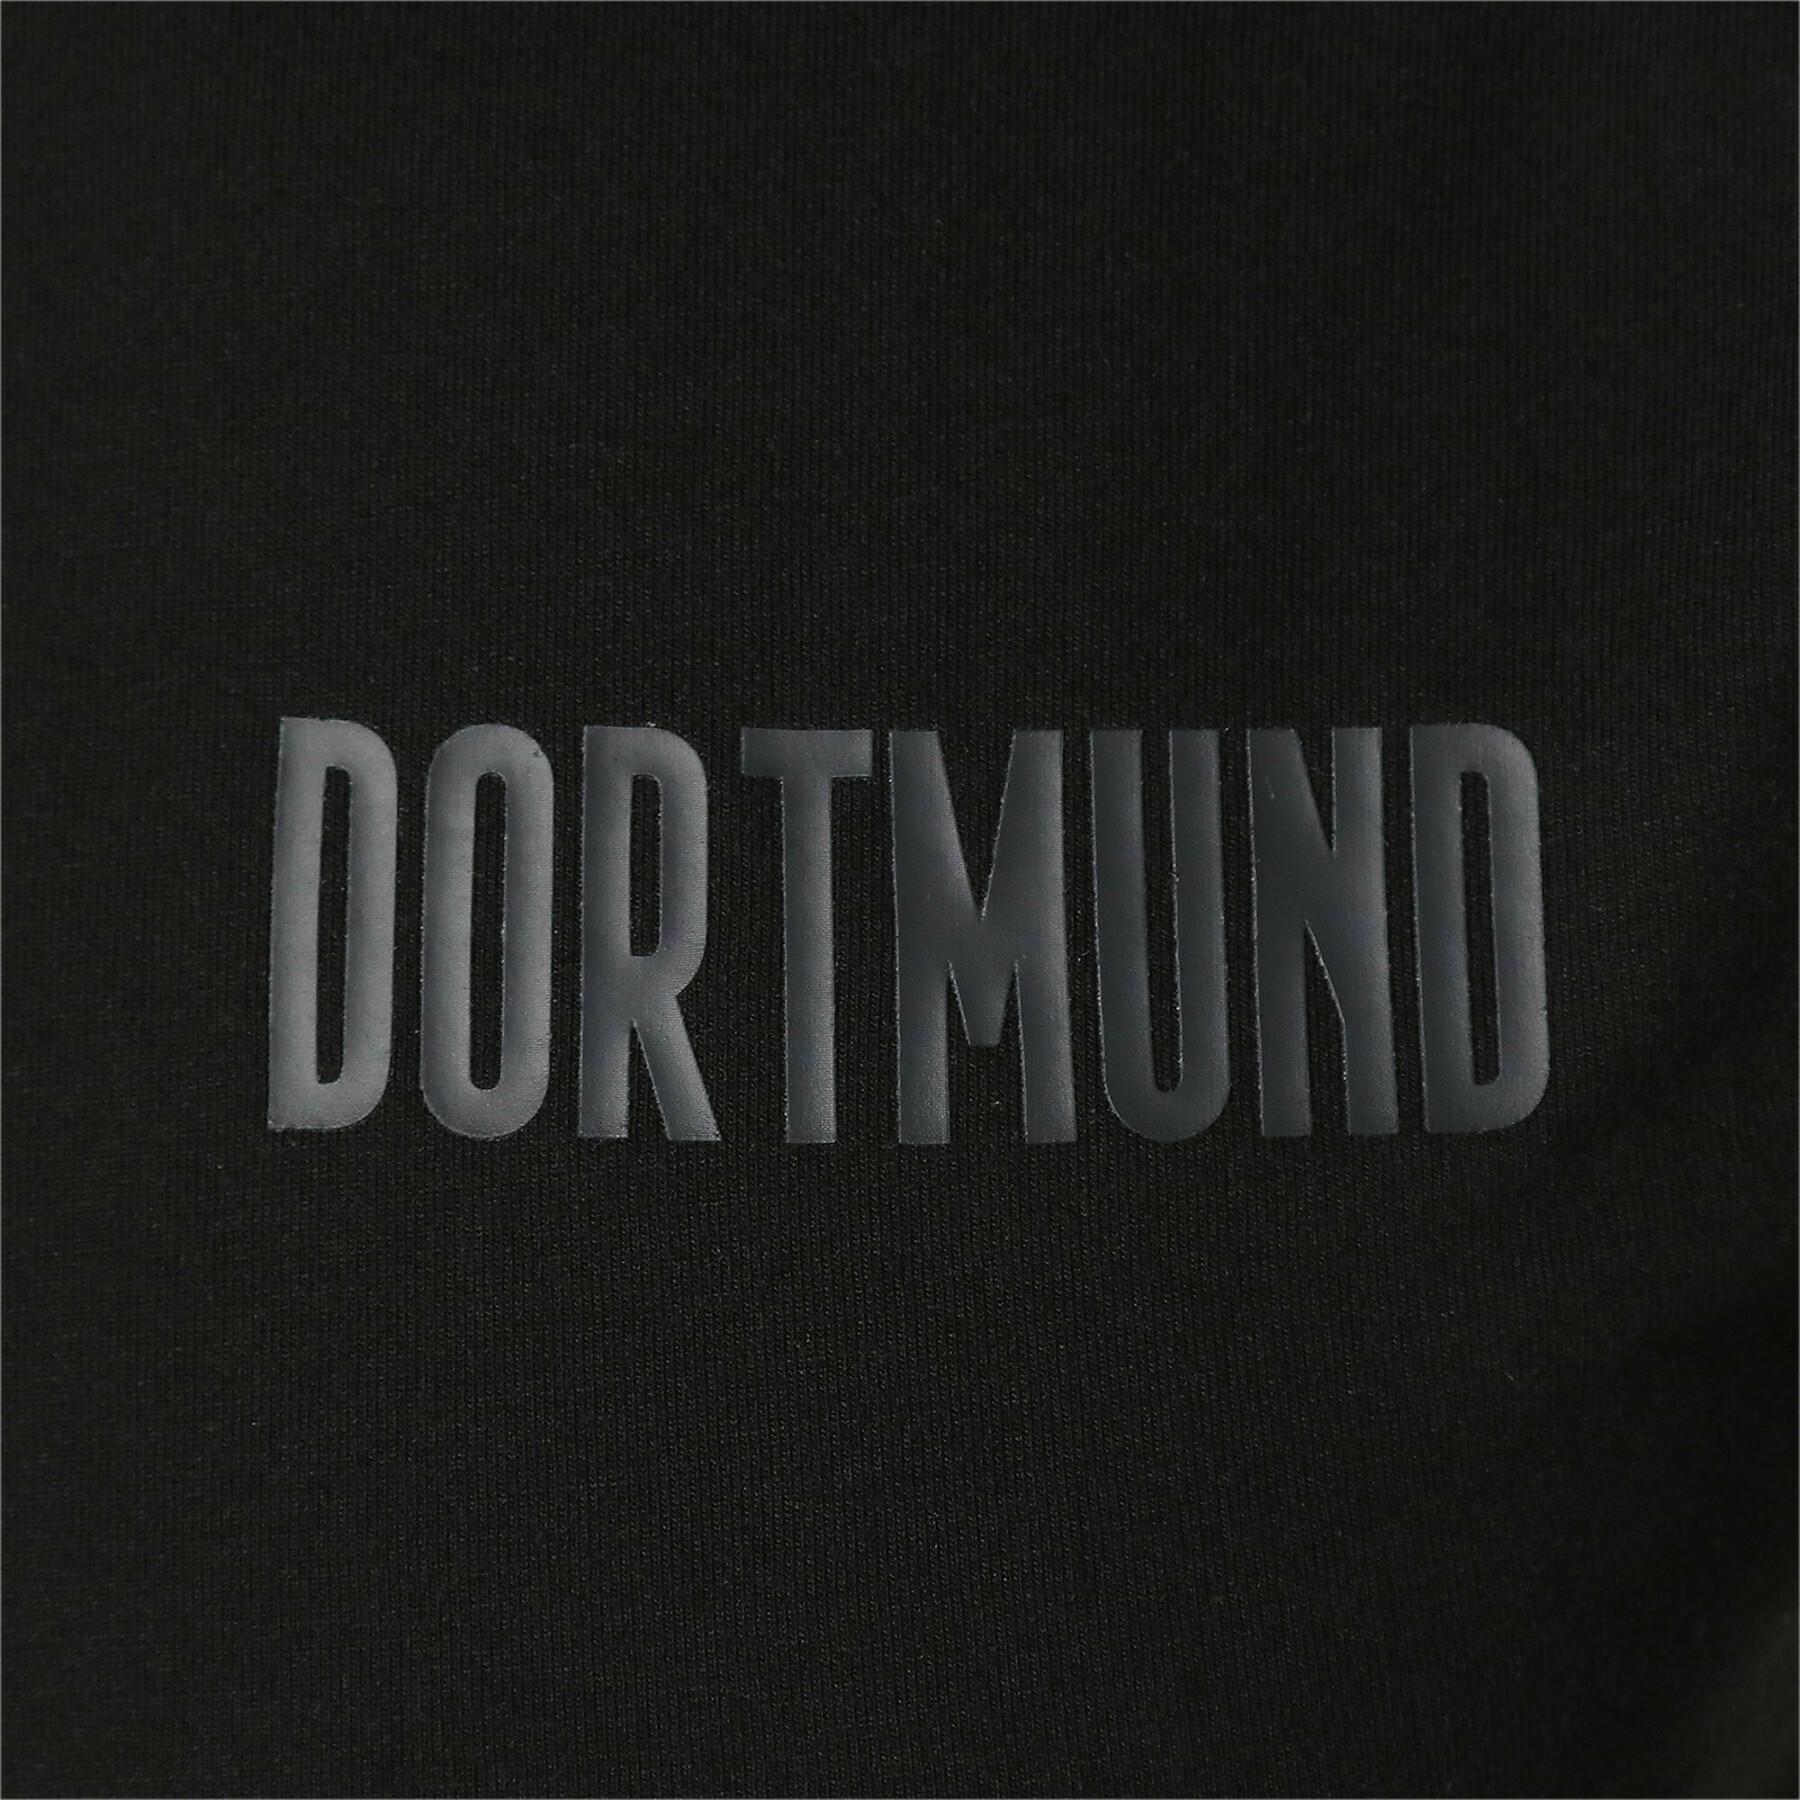 Koszulka Borussia Dortmund Evostripe 2021/22